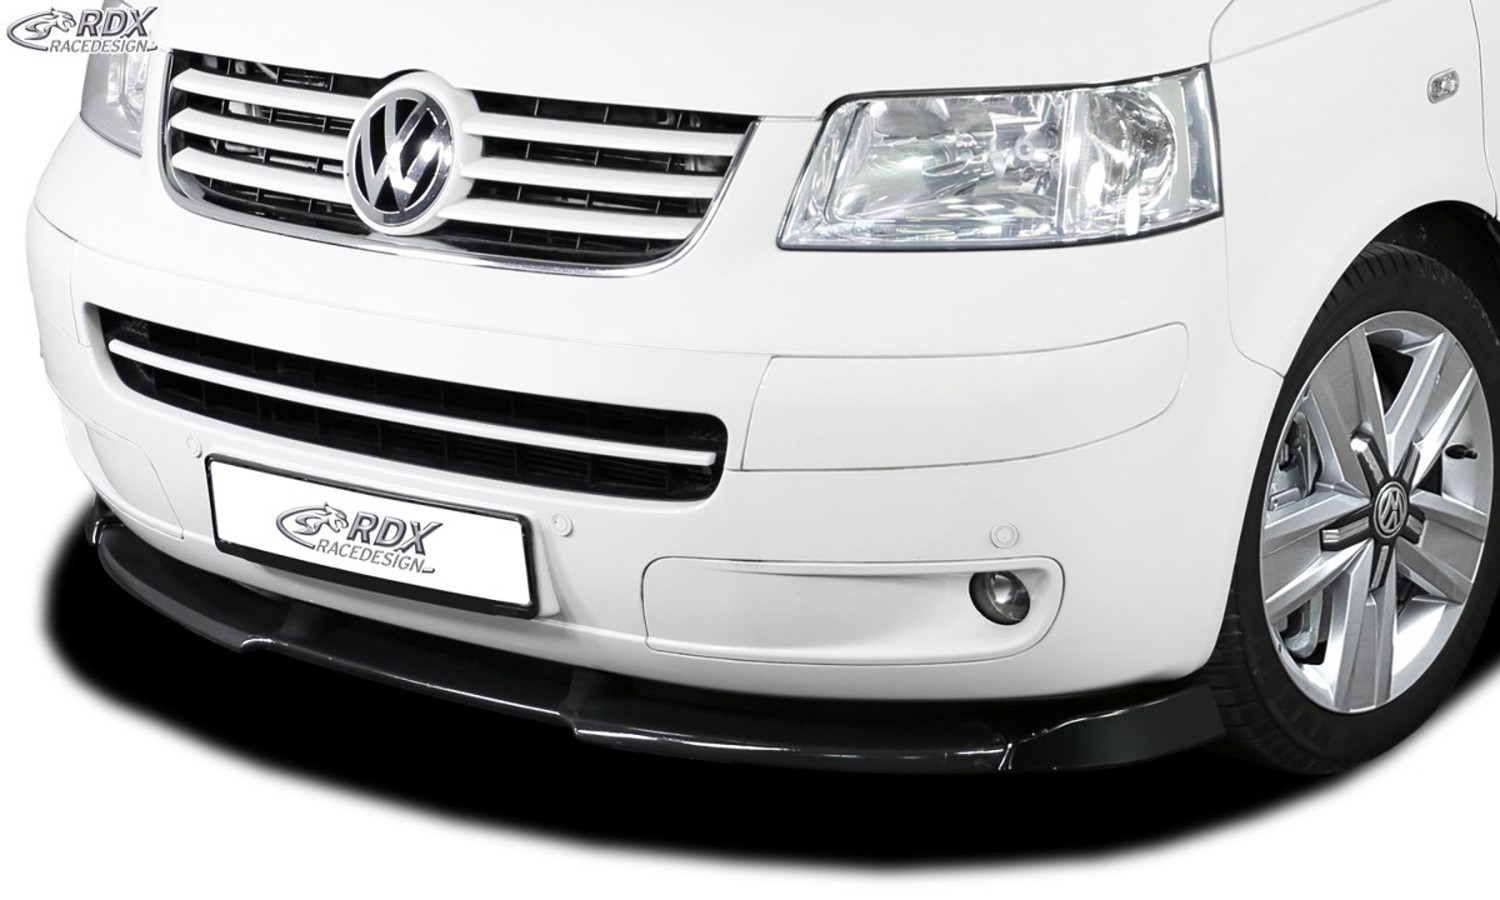 VARIO-X Frontspoiler VW T5 (bis 2009) (für werkseitig lackierte Stossstange wie Multivan usw.) Frontansatz